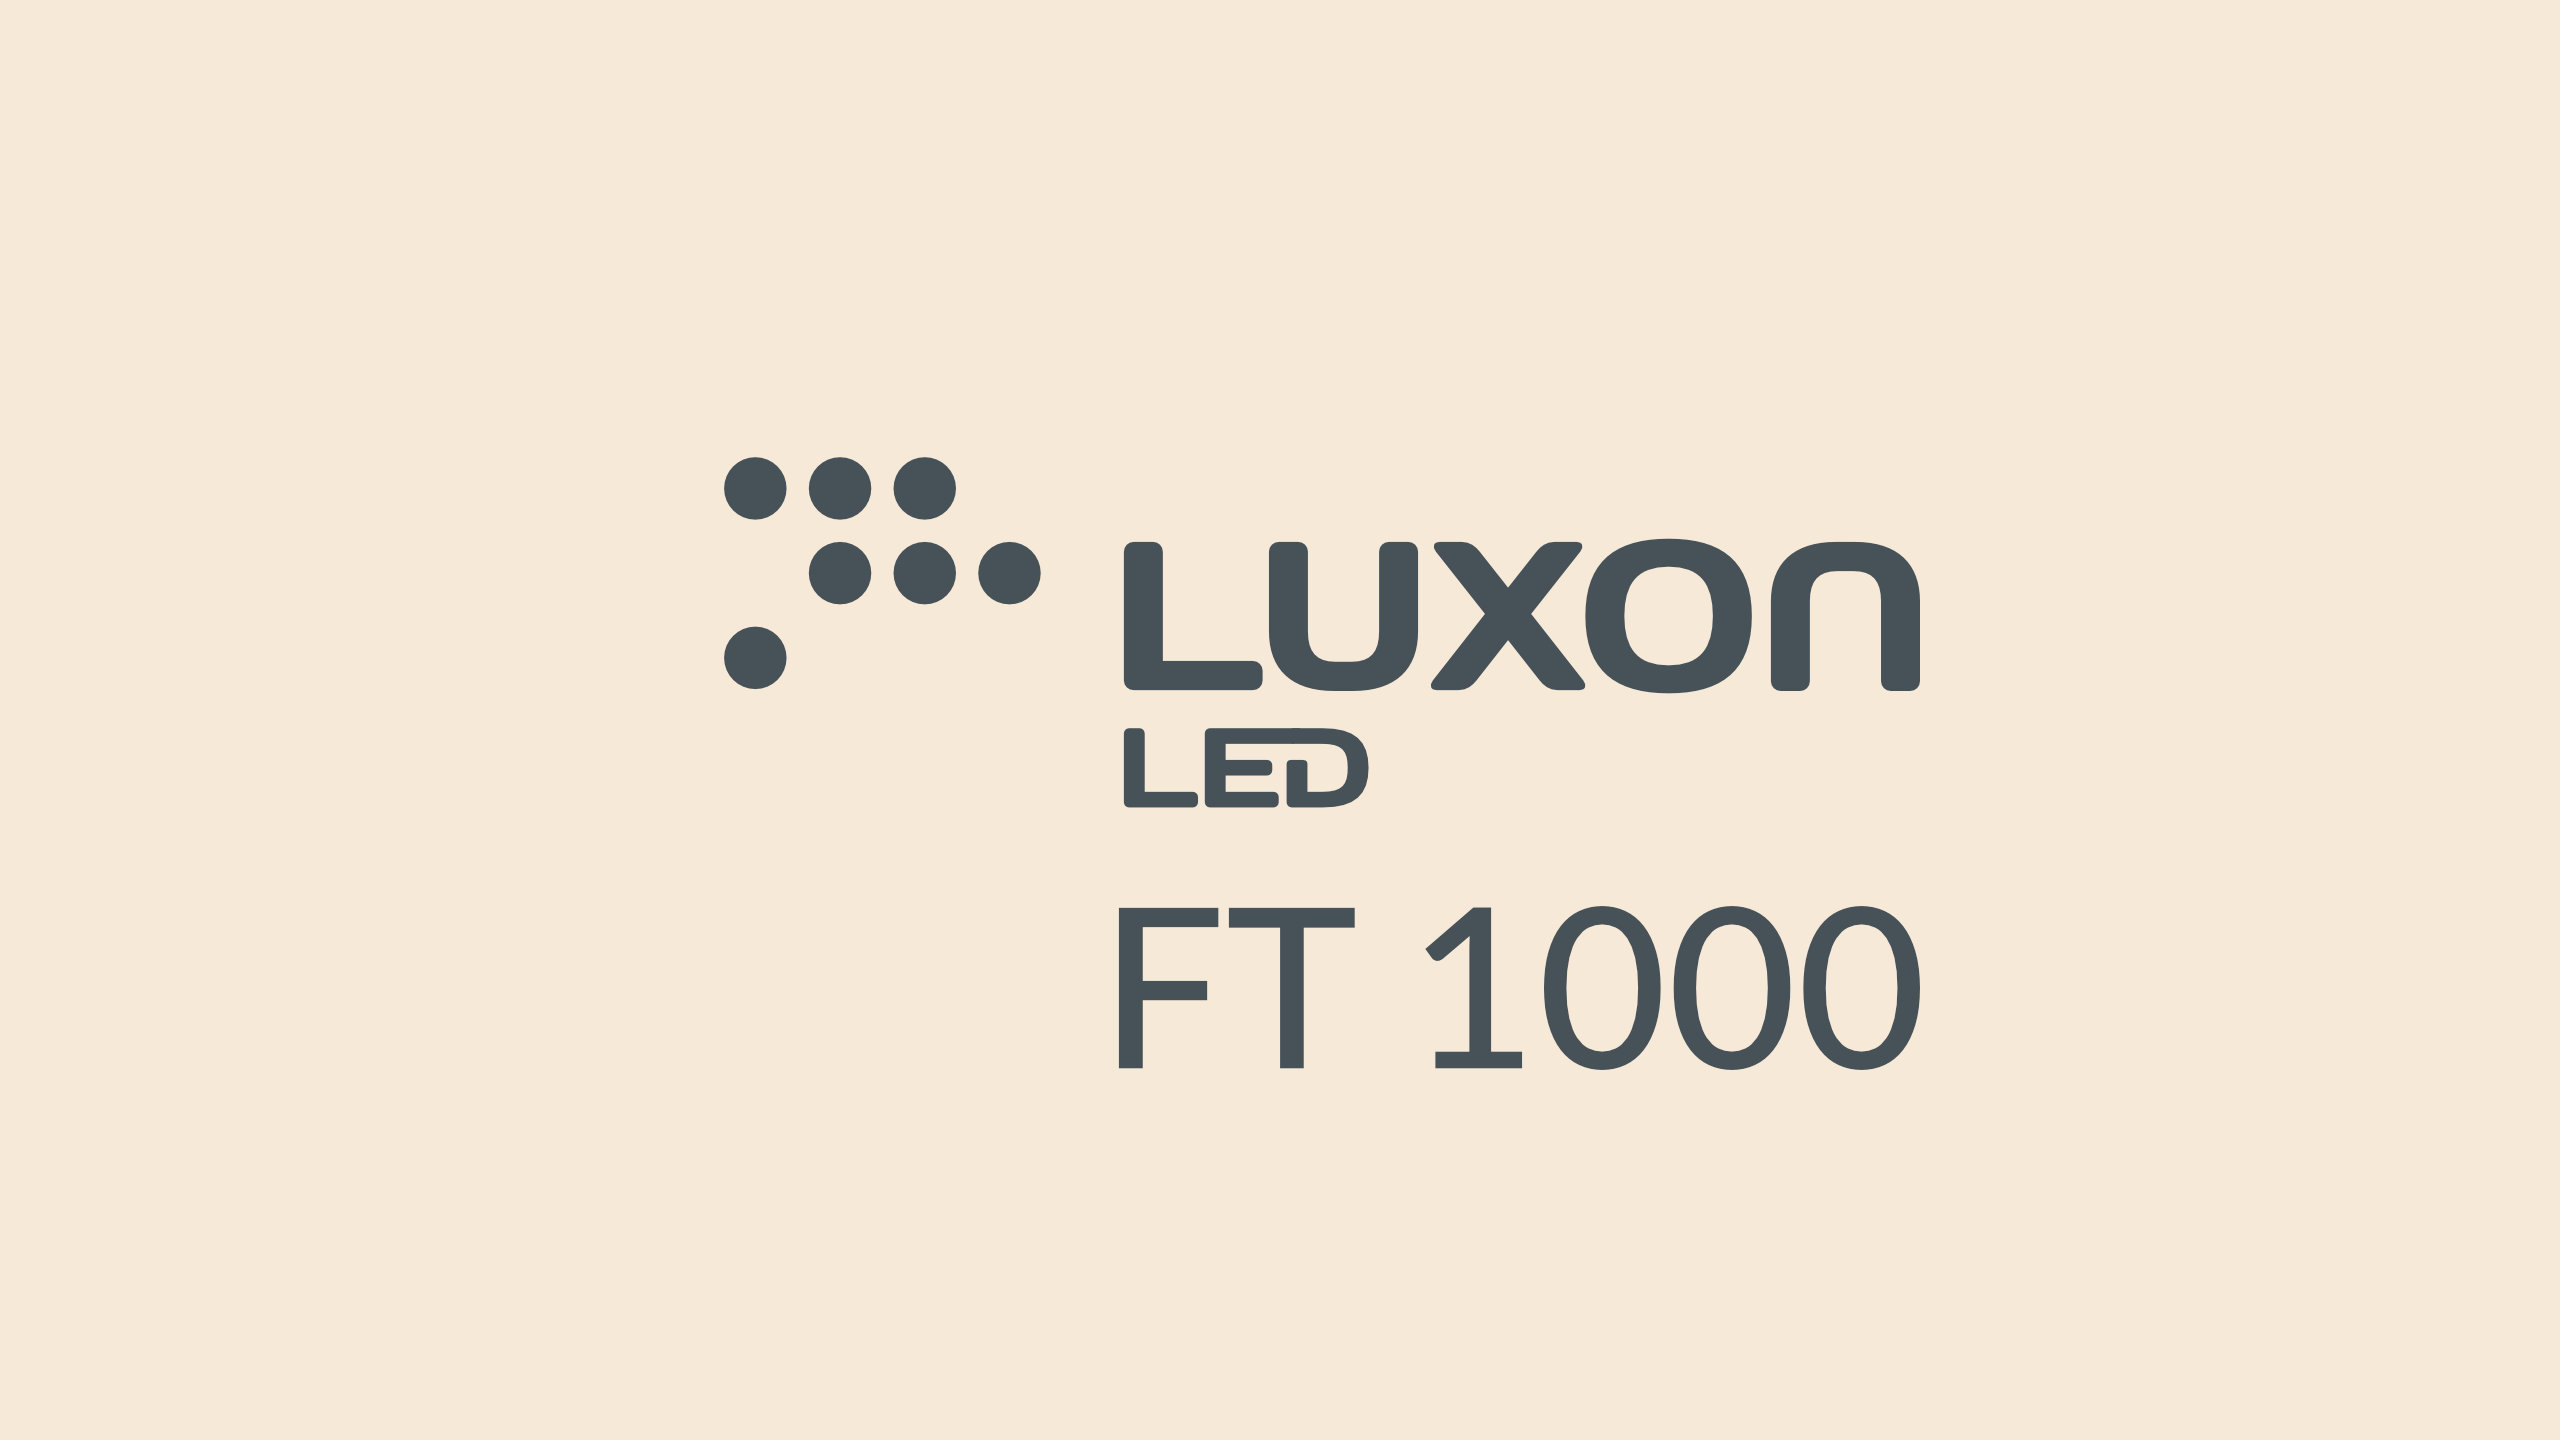 Znaczek Luxon LED FT 1000